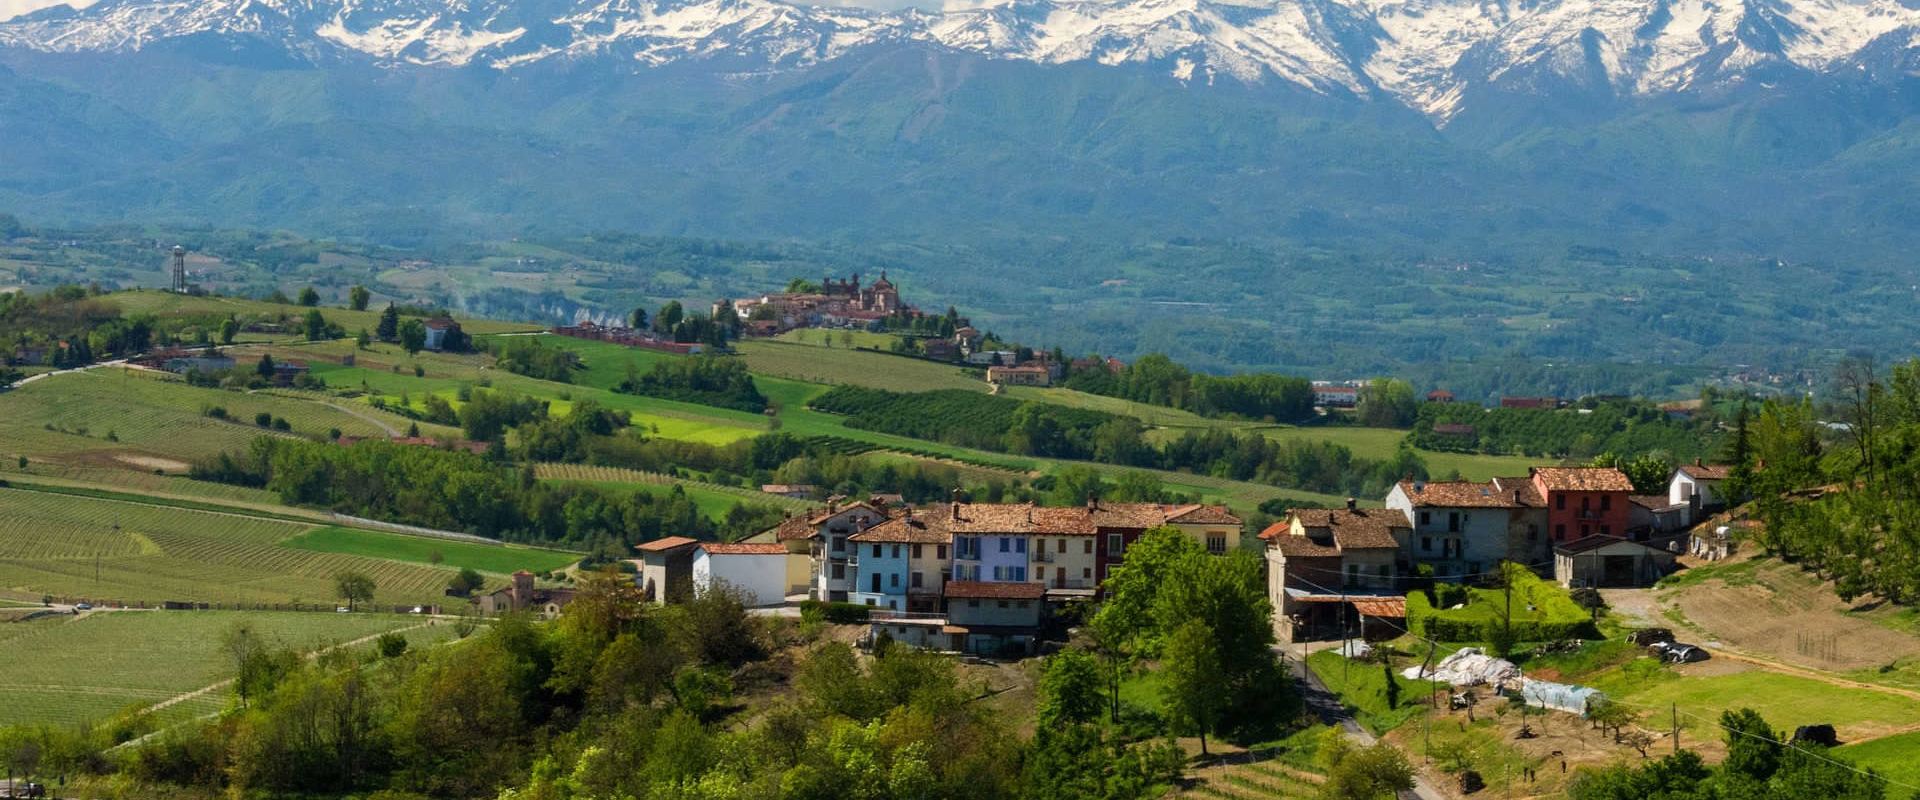 Piemonte2